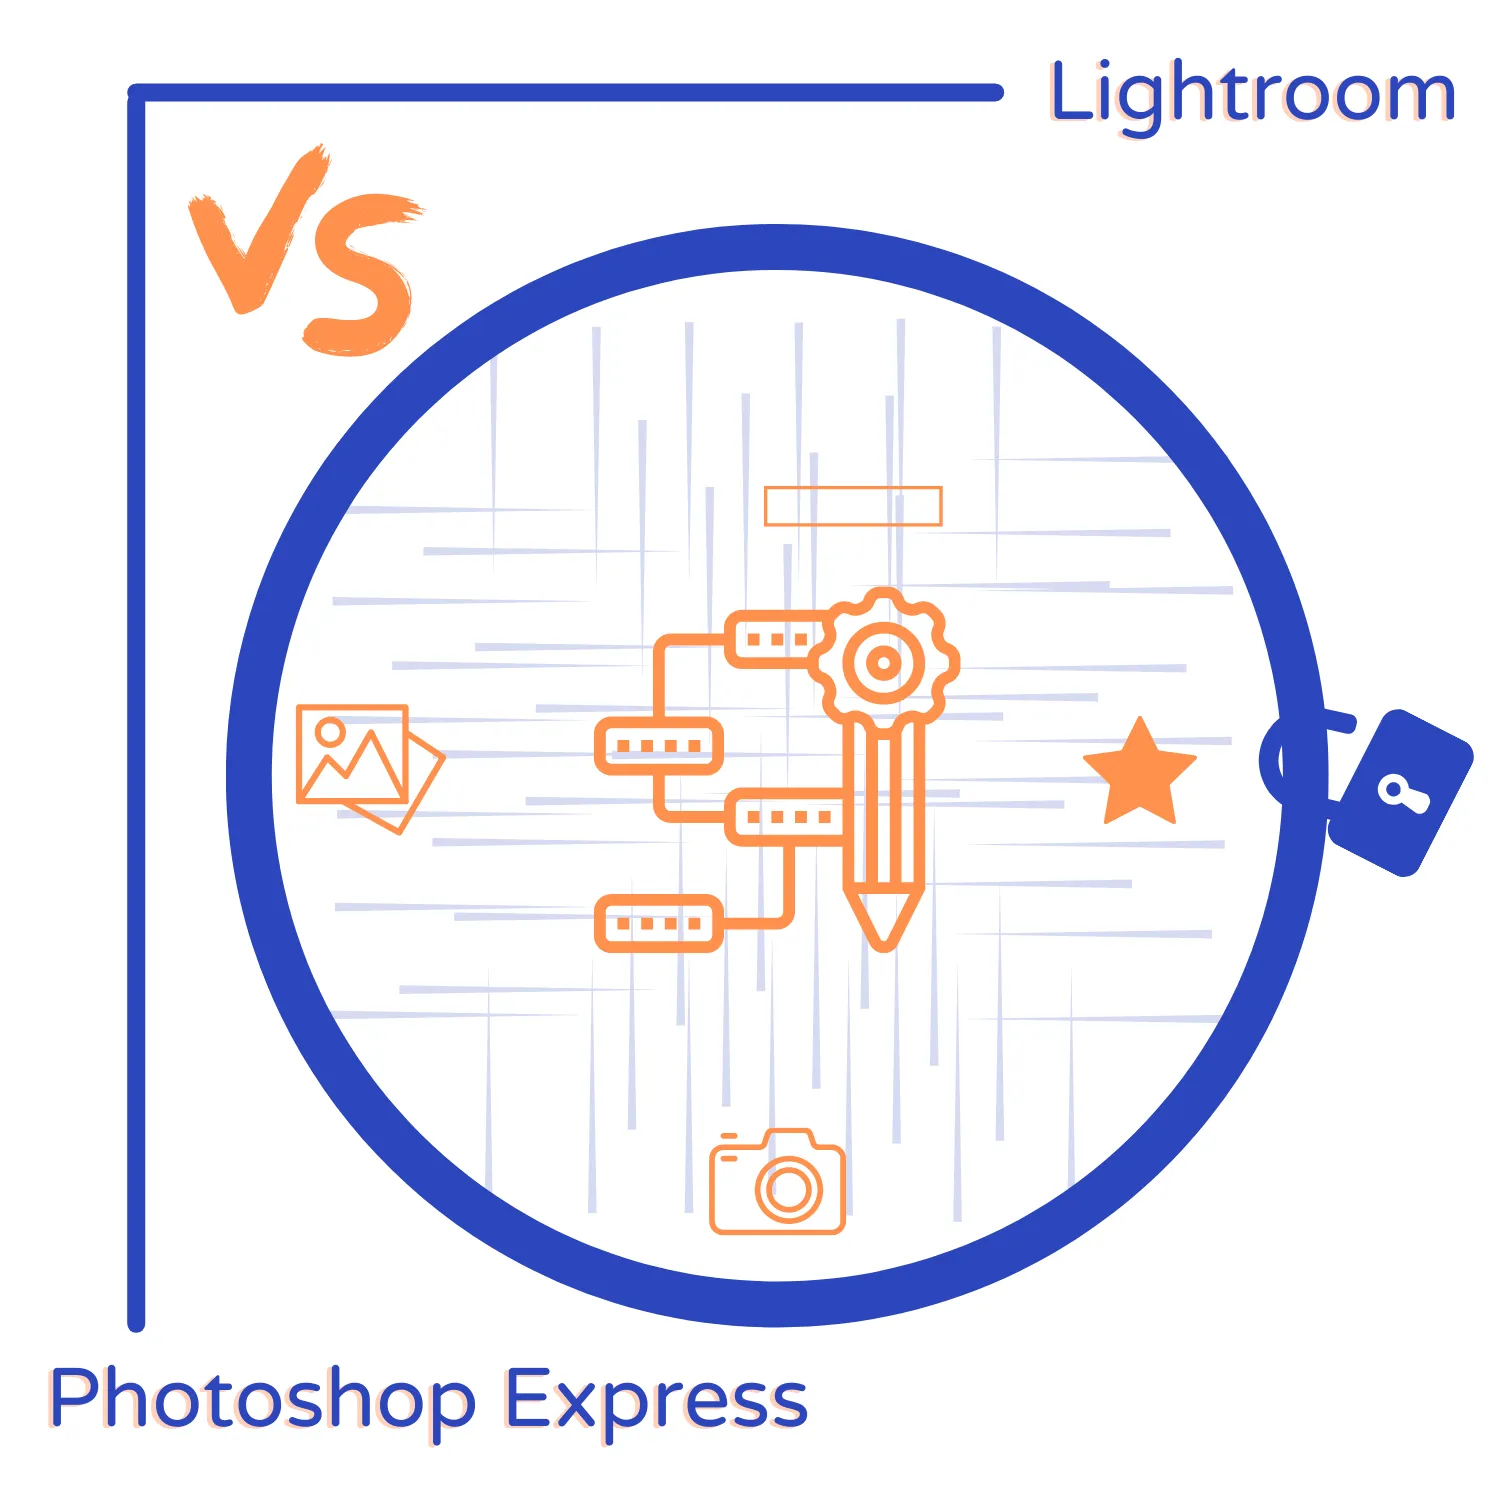 Photoshop Express vs Lightroom